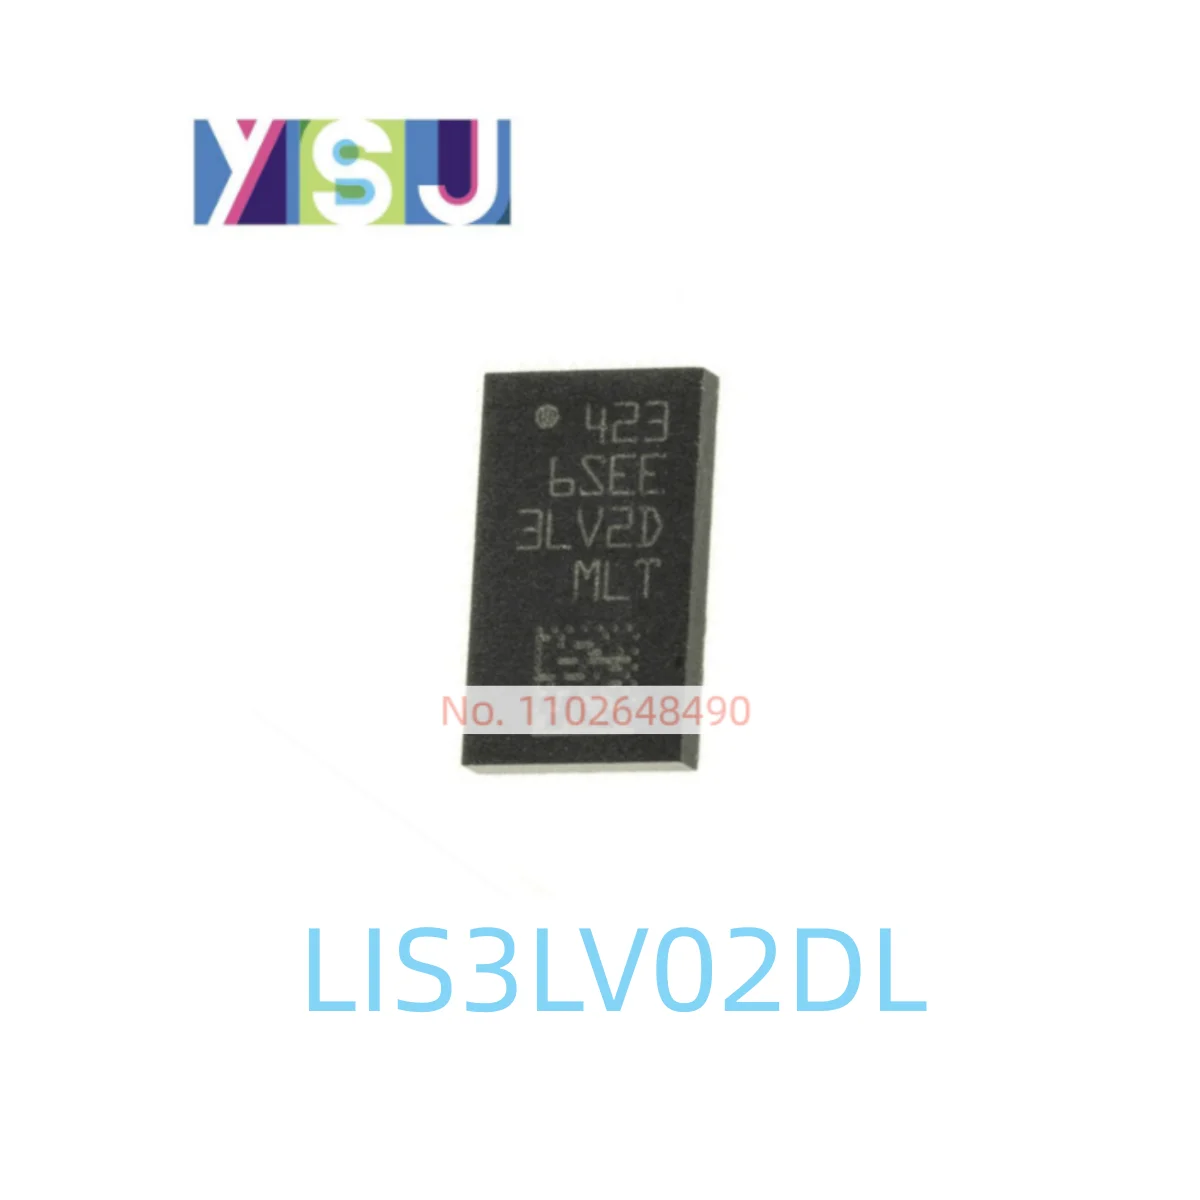 Микросхема LIS3LV02DL с совершенно новым акселерометром Encapsulation16-VLGA